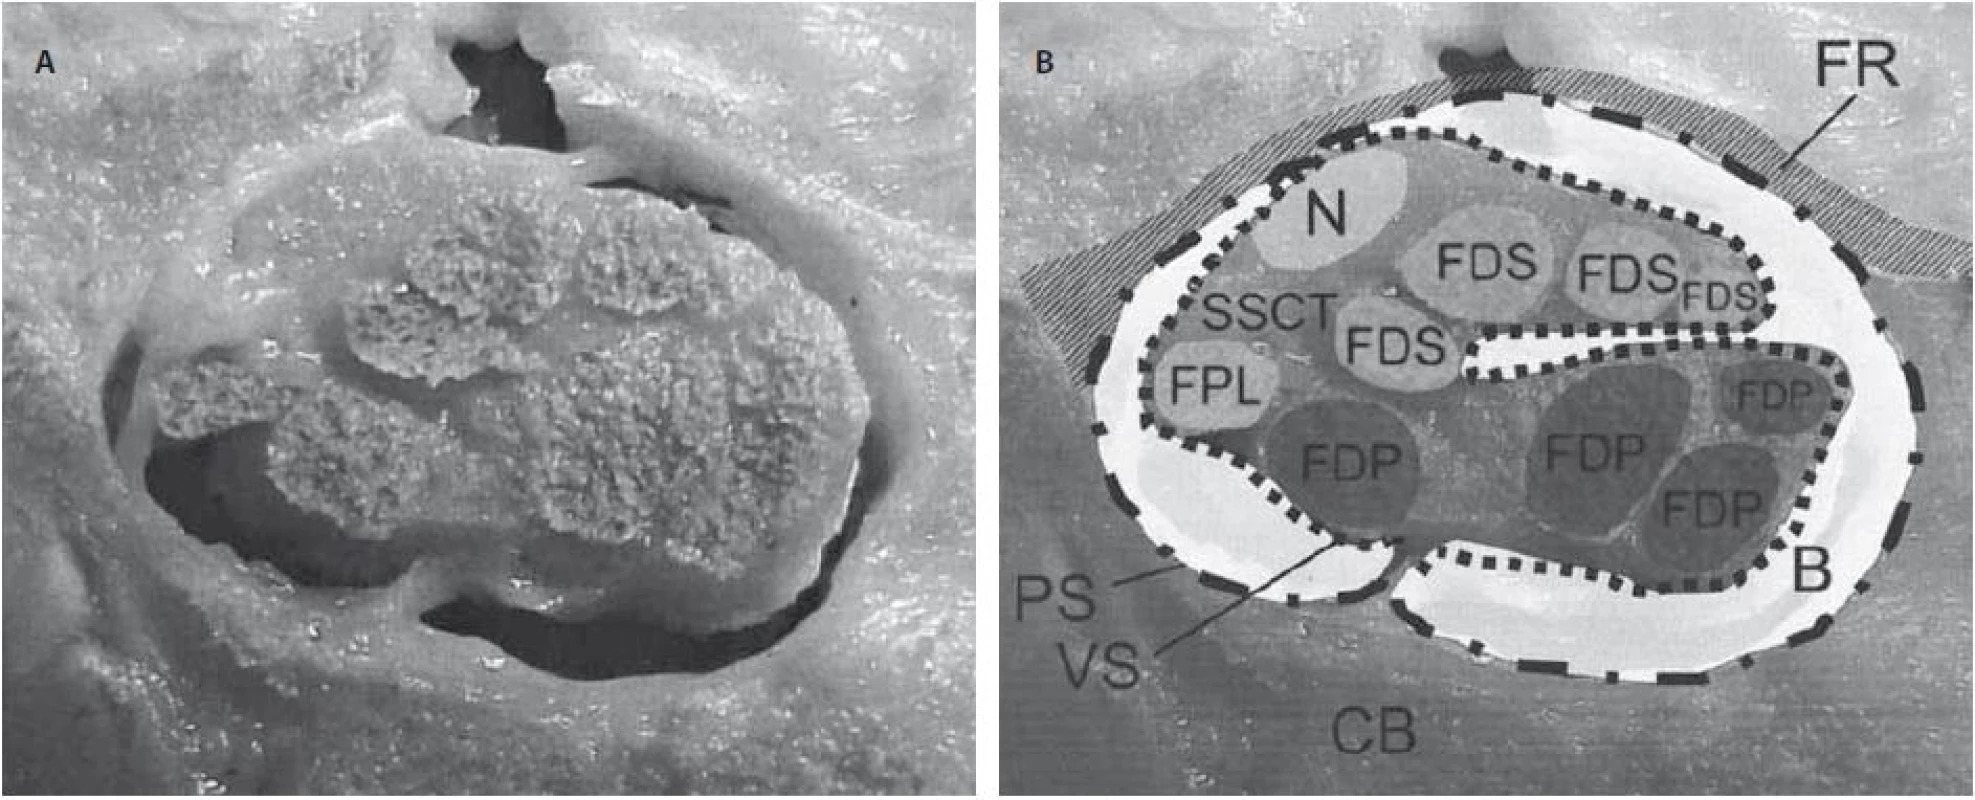 Průřez karpálním tunelem u člověka v úrovni os hamatum (A). Schématický popis struktur uvnitř karpálního tunelu (B) [13].
Retinaculum flexorum (FR) a karpální kosti (CB) okolo karpálního tunelu a uvnitř karpálního tunelu nervus medianus (N), šlacha m. flexor pollicis longus (FPL), šlacha m. flexor digitorum profundus (FDP), šlacha m. flexor digitorum superficialis (FDS), bursa (B), parietální vrstva synoviální pochvy (PS), viscerální vrstva synoviální pochvy (VS).
Fig. 1. Transverse cut section through a human carpal tunnel at the hamate level (A). Schematic overview showing the structures within the carpal tunnel (B) [13].
The flexor retinaculum (FR) and carpal bones (CB) surrounding the carpal tunnel and within the carpal tunnel are the median nerve (N), flexor pollicis longus (FPL), flexor digitorum profundus (FDP) and flexor digitorum superficialis (FDS) tendons, bursa (B), subsynovial connective tissue – parietal synovial (PS) and visceral synovial (VS) layer.